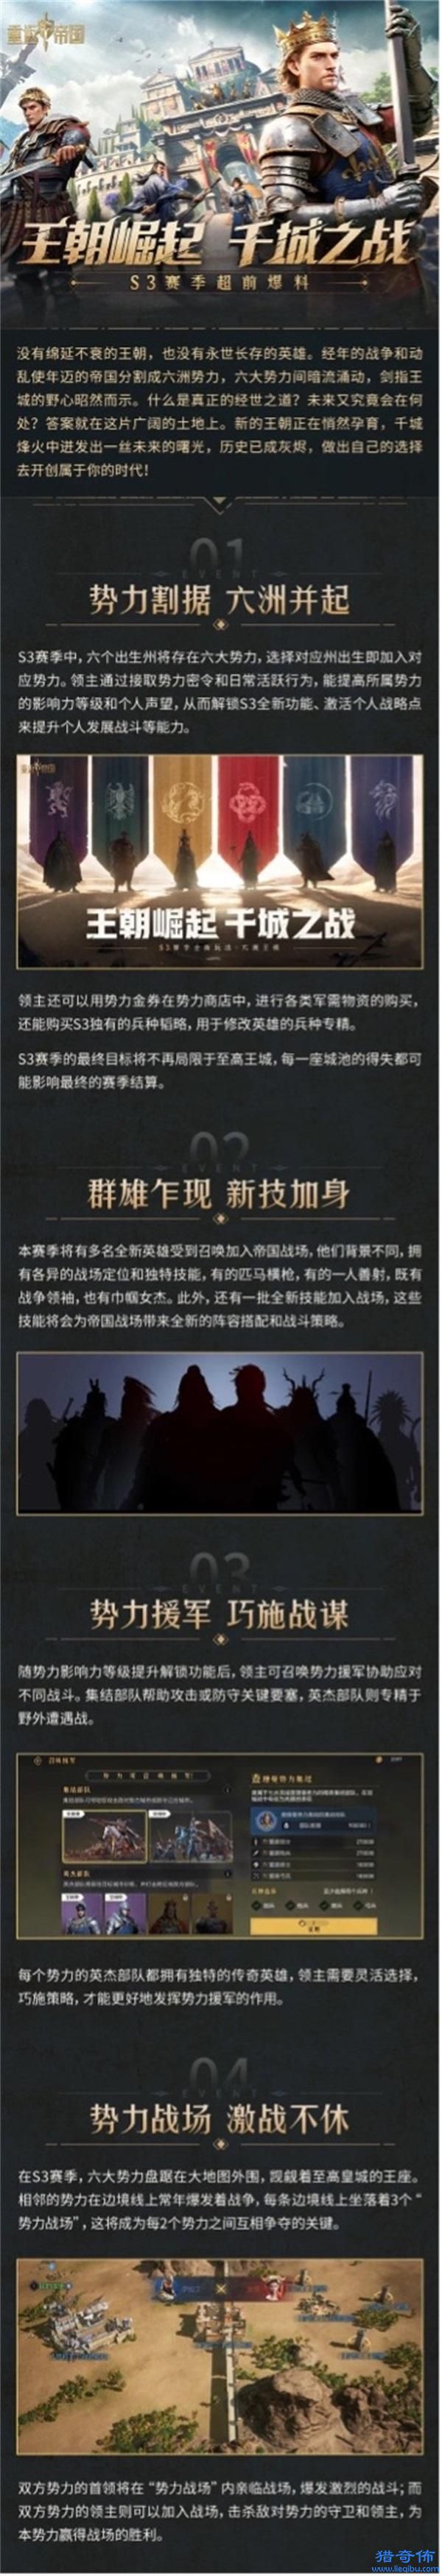 王朝崛起，千城之战——《重返帝国》迎来全新势力玩法_图片